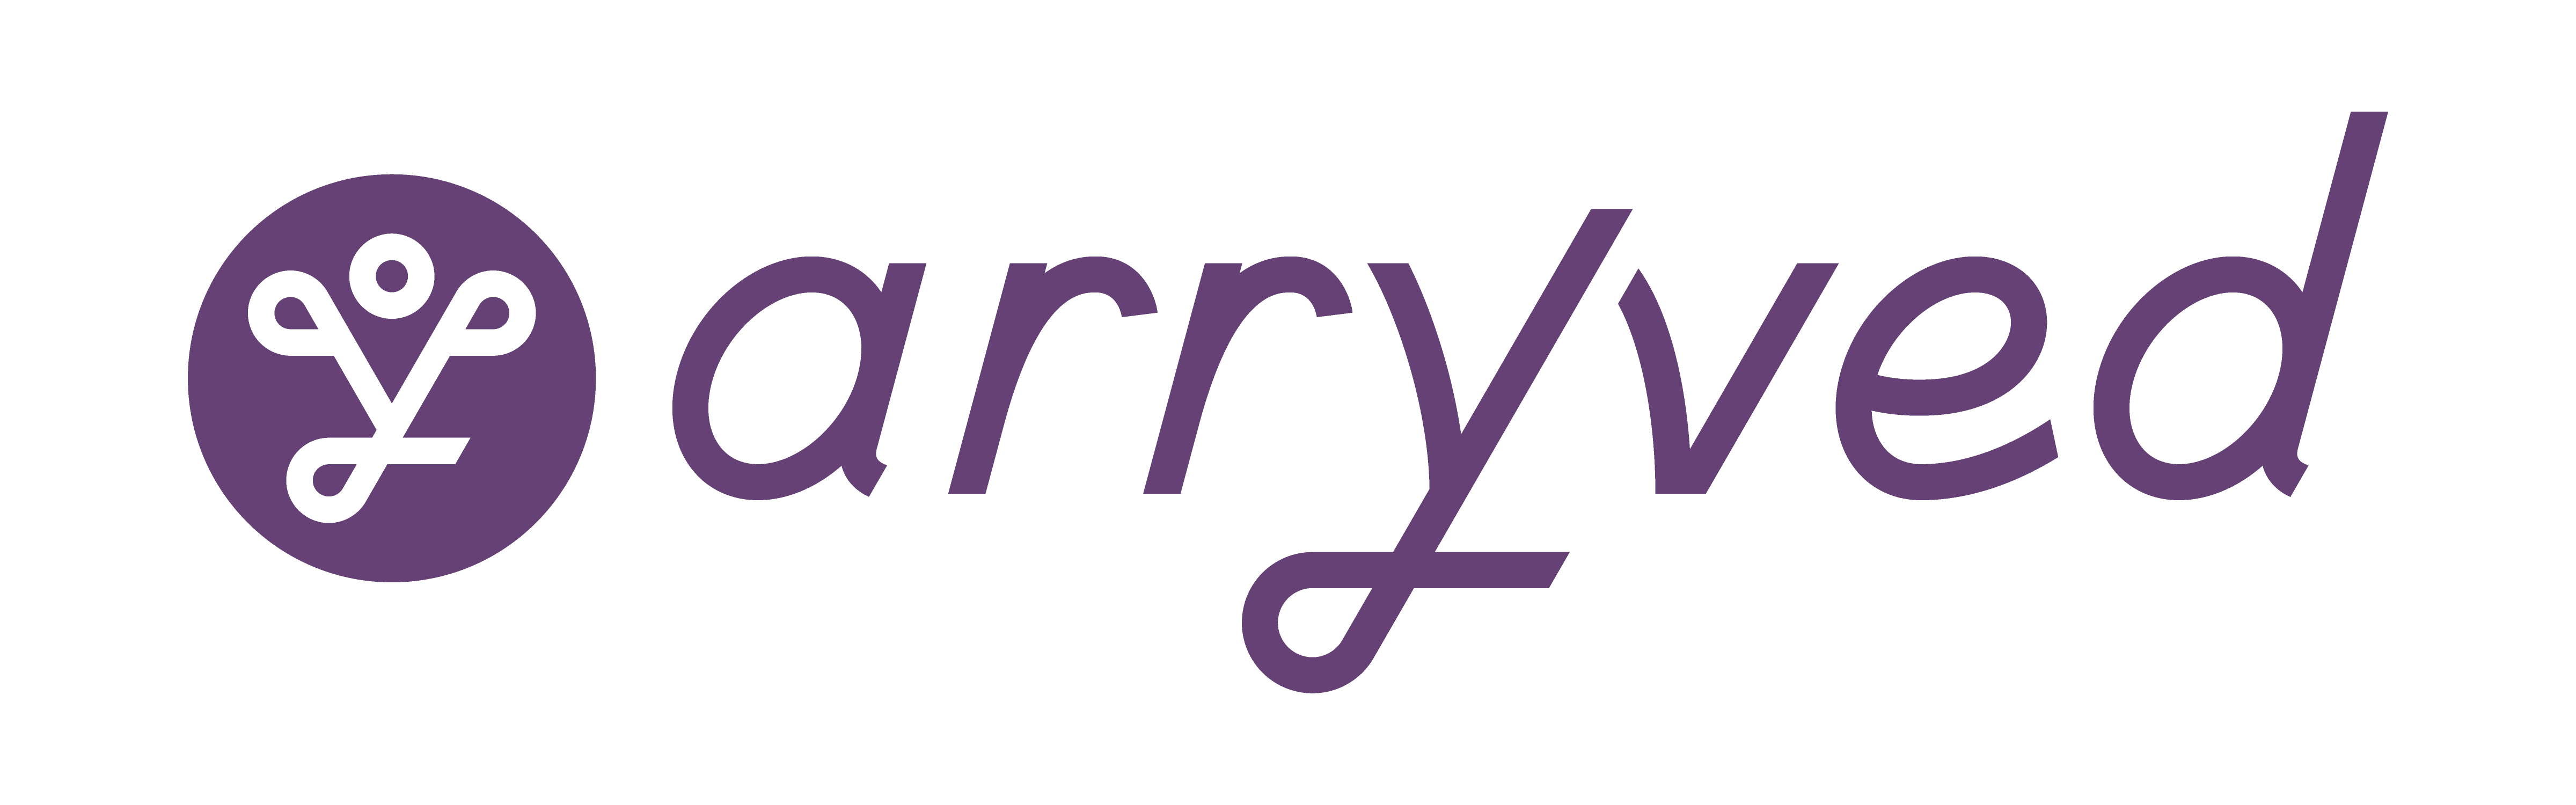 Arryved Logo